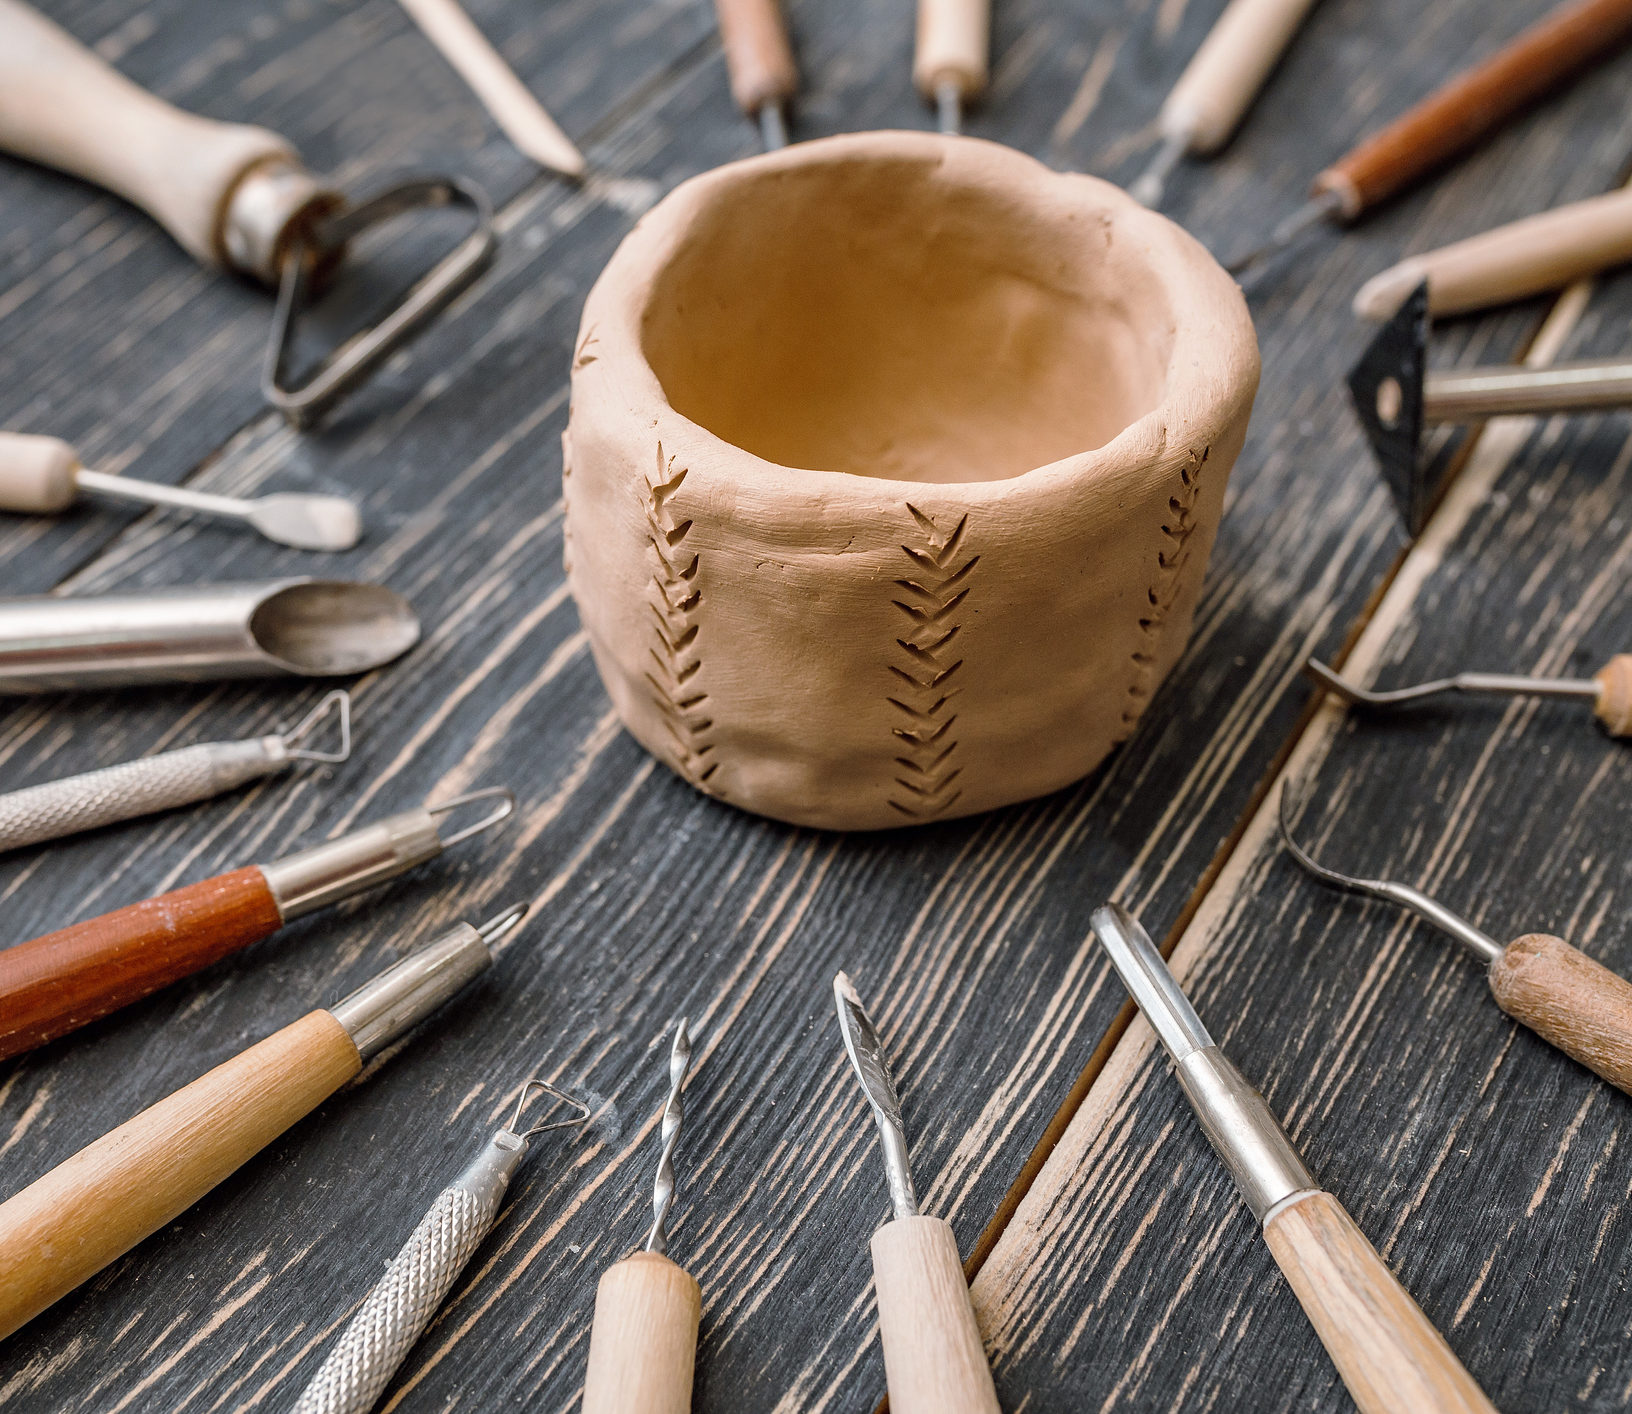 As ferramentas para argila ajudam tanto na hora de confeccionar vasos, quanto na finalização e acabamento. 